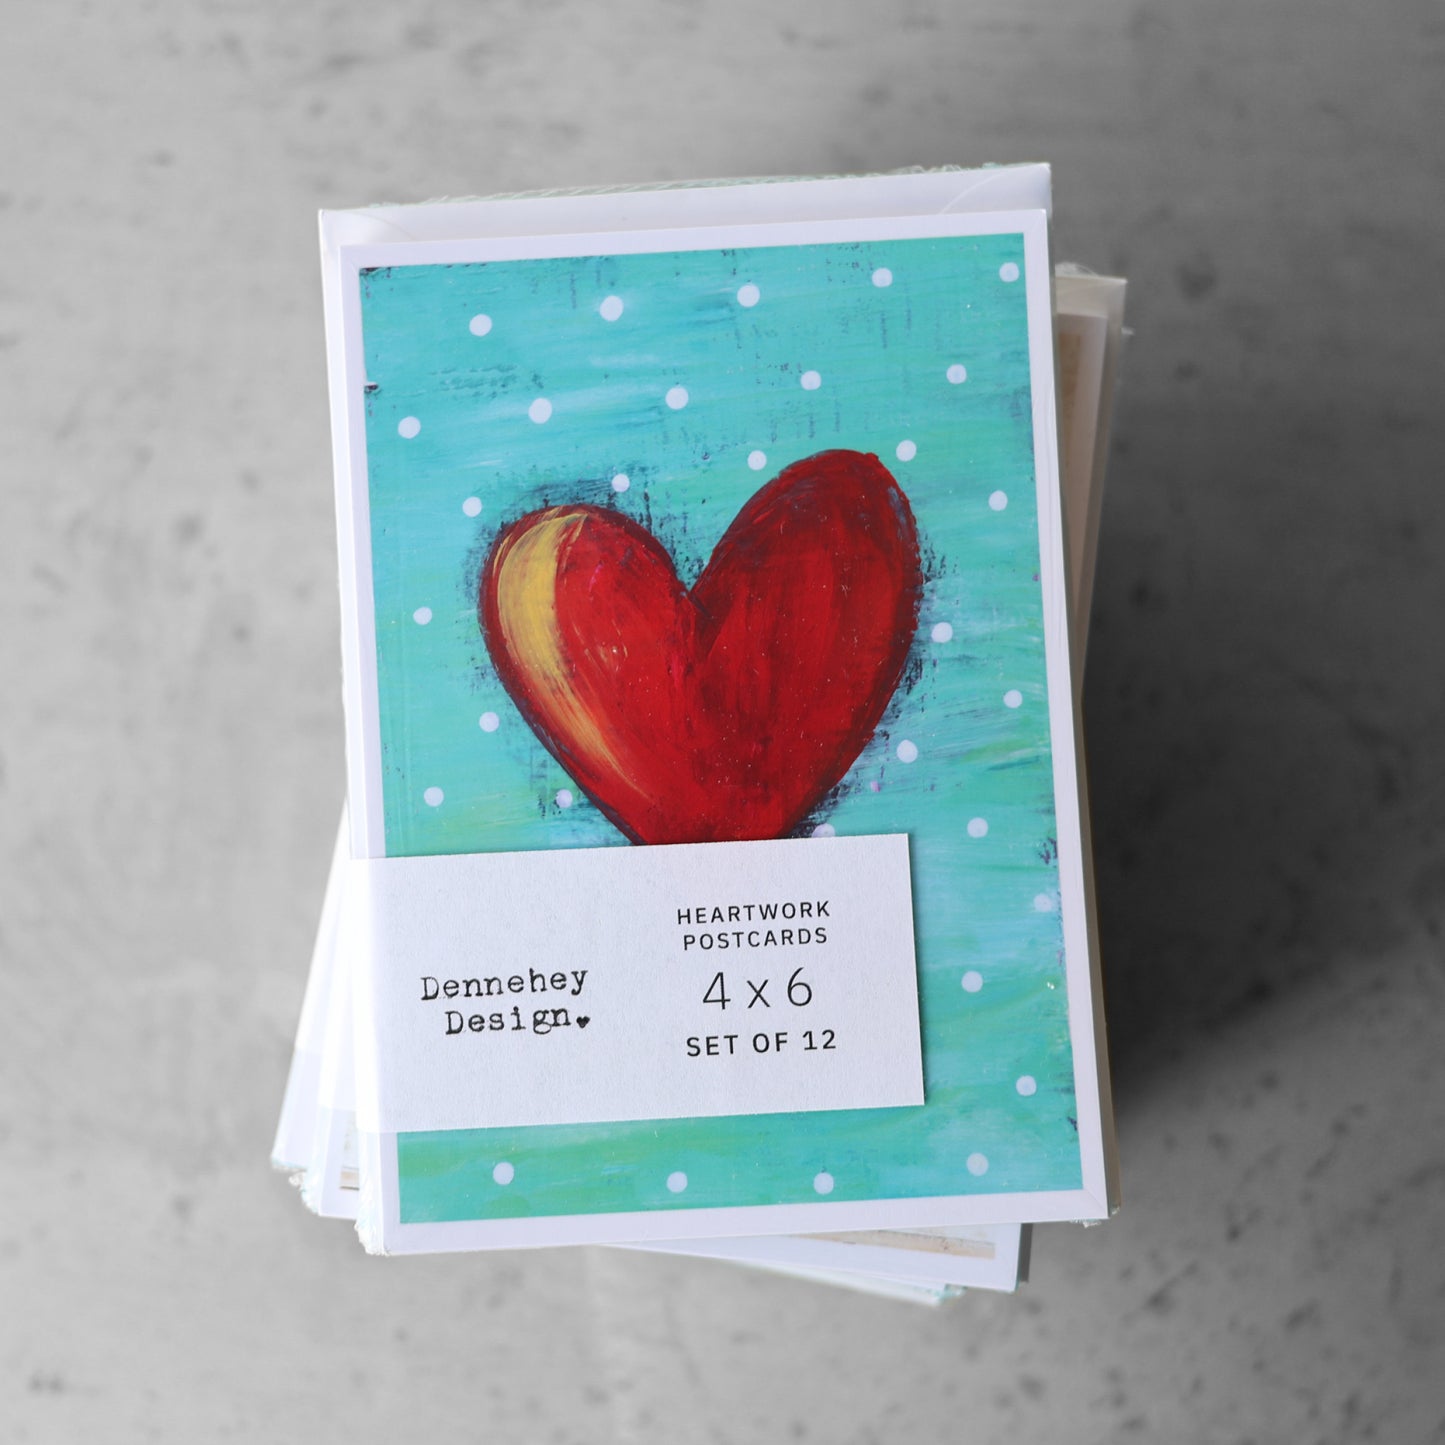 Heartwork Postcard Sets